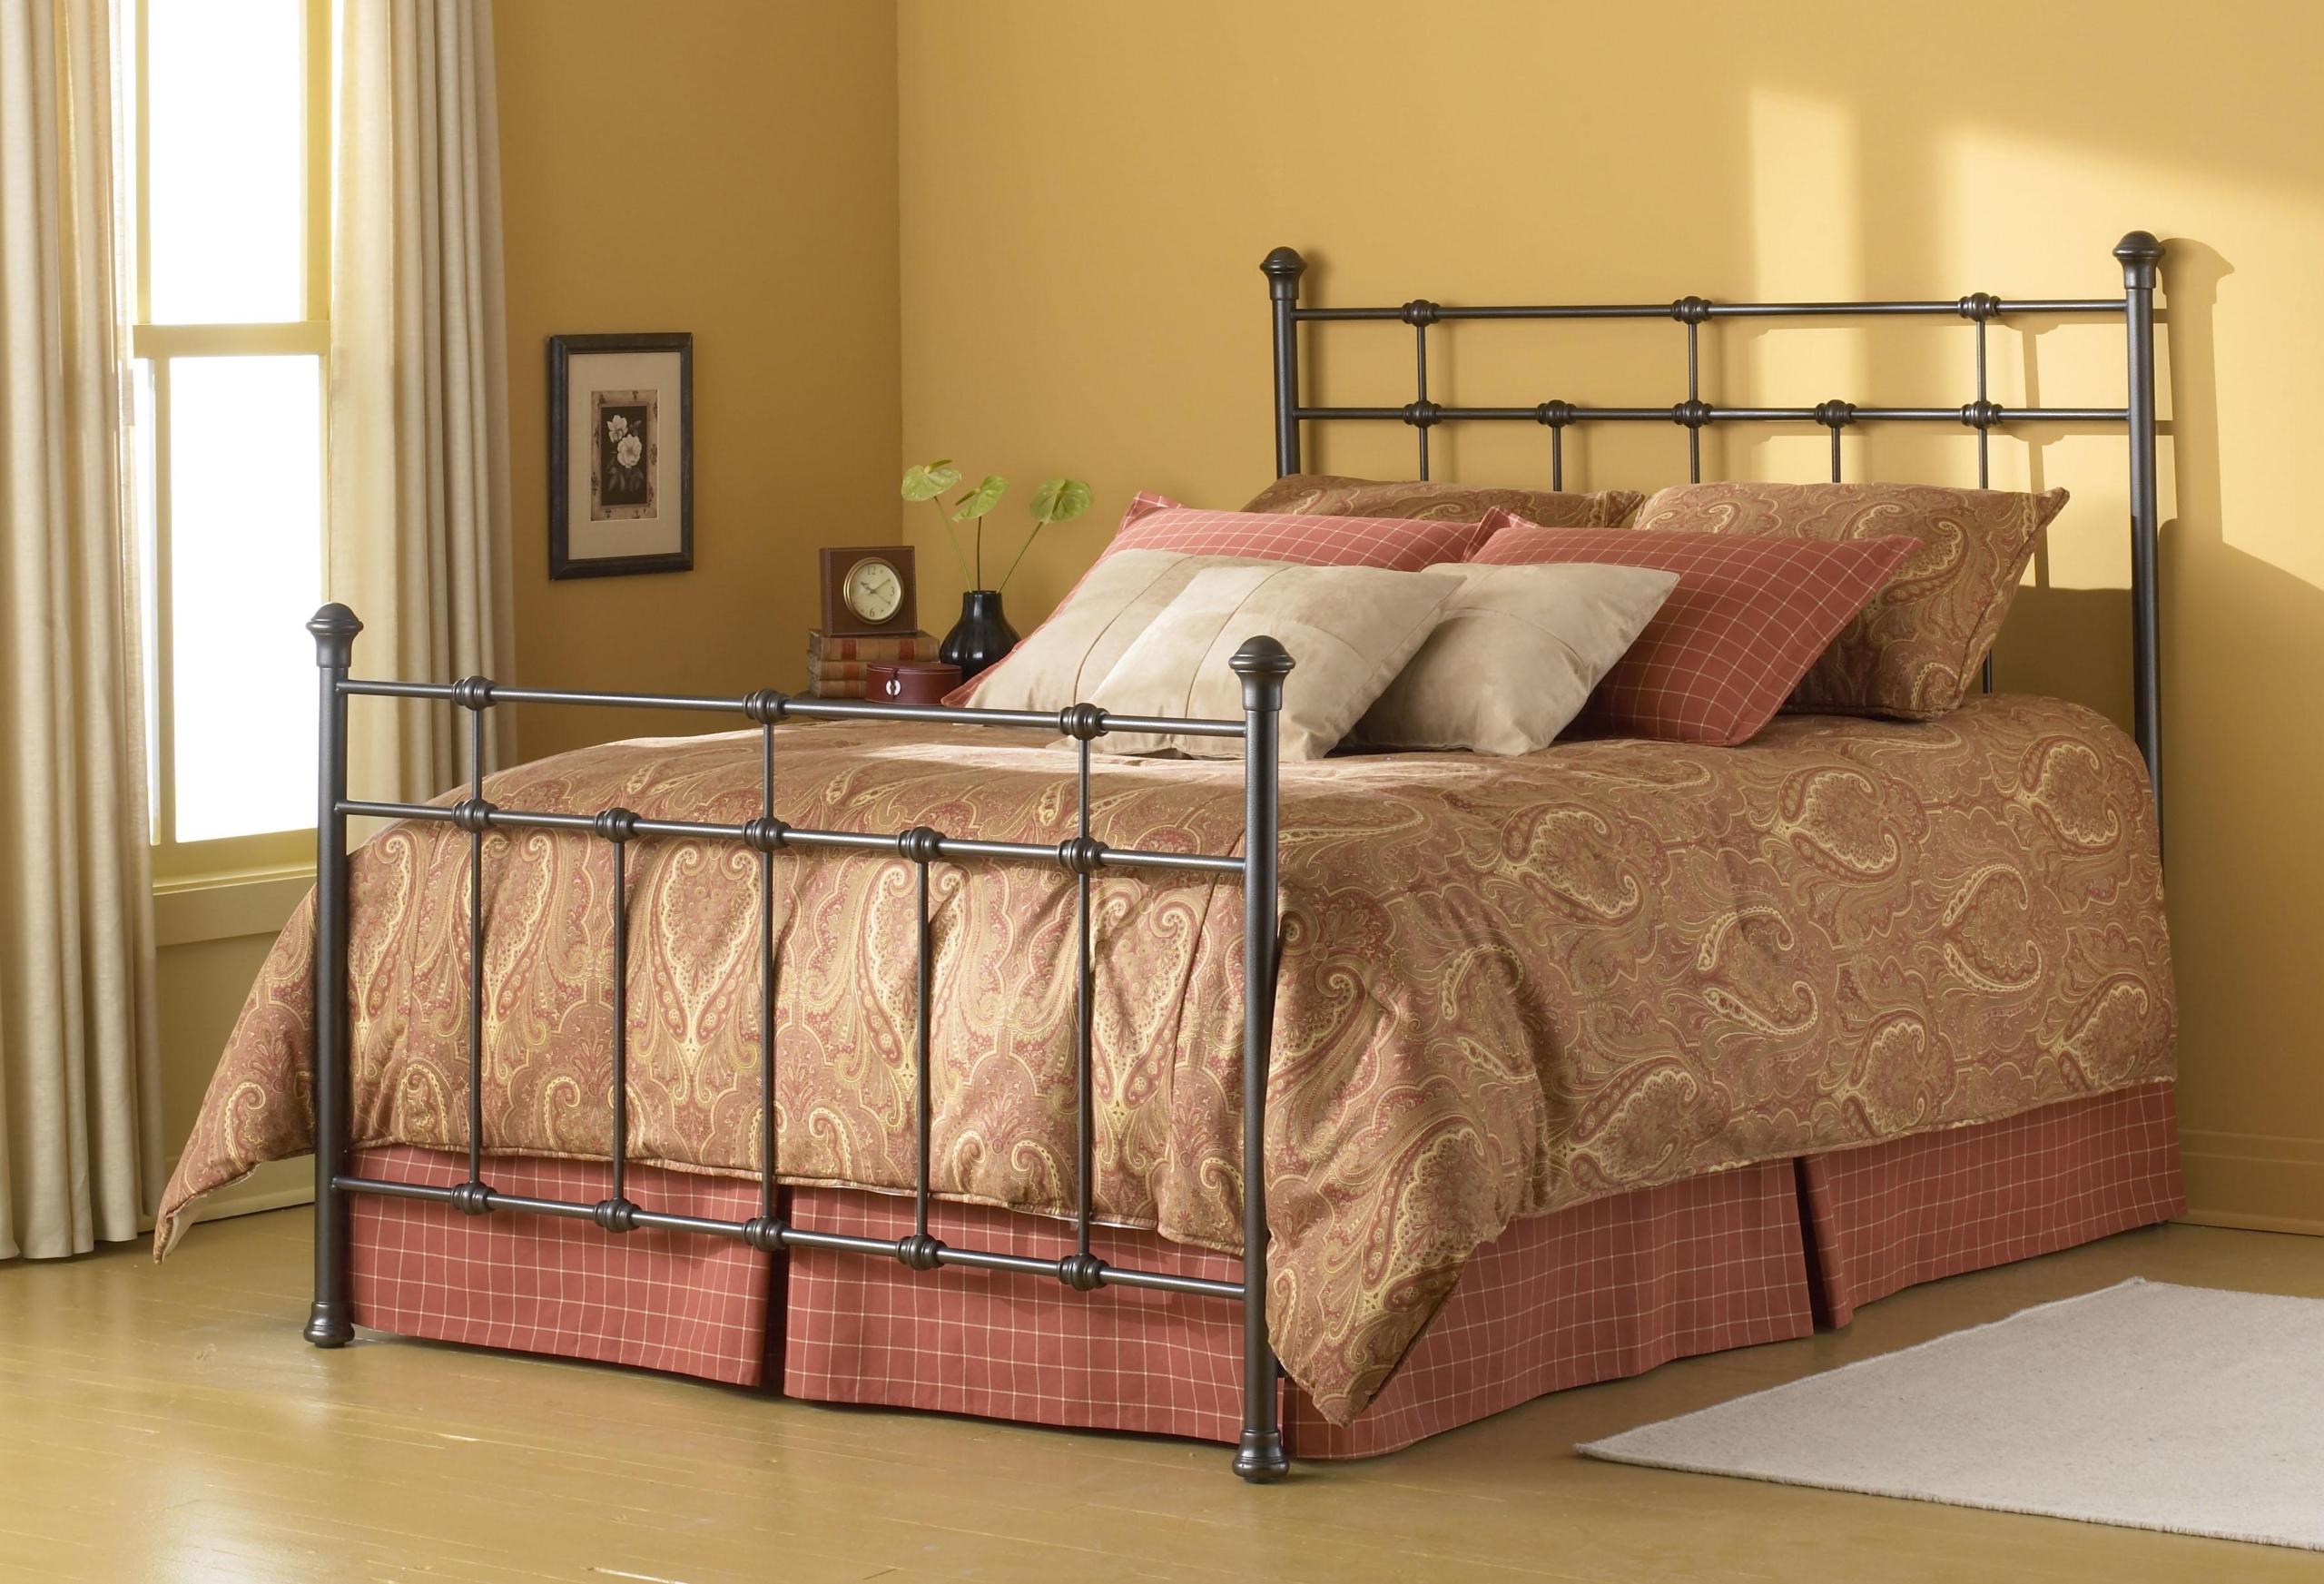 Stanley queen size bed